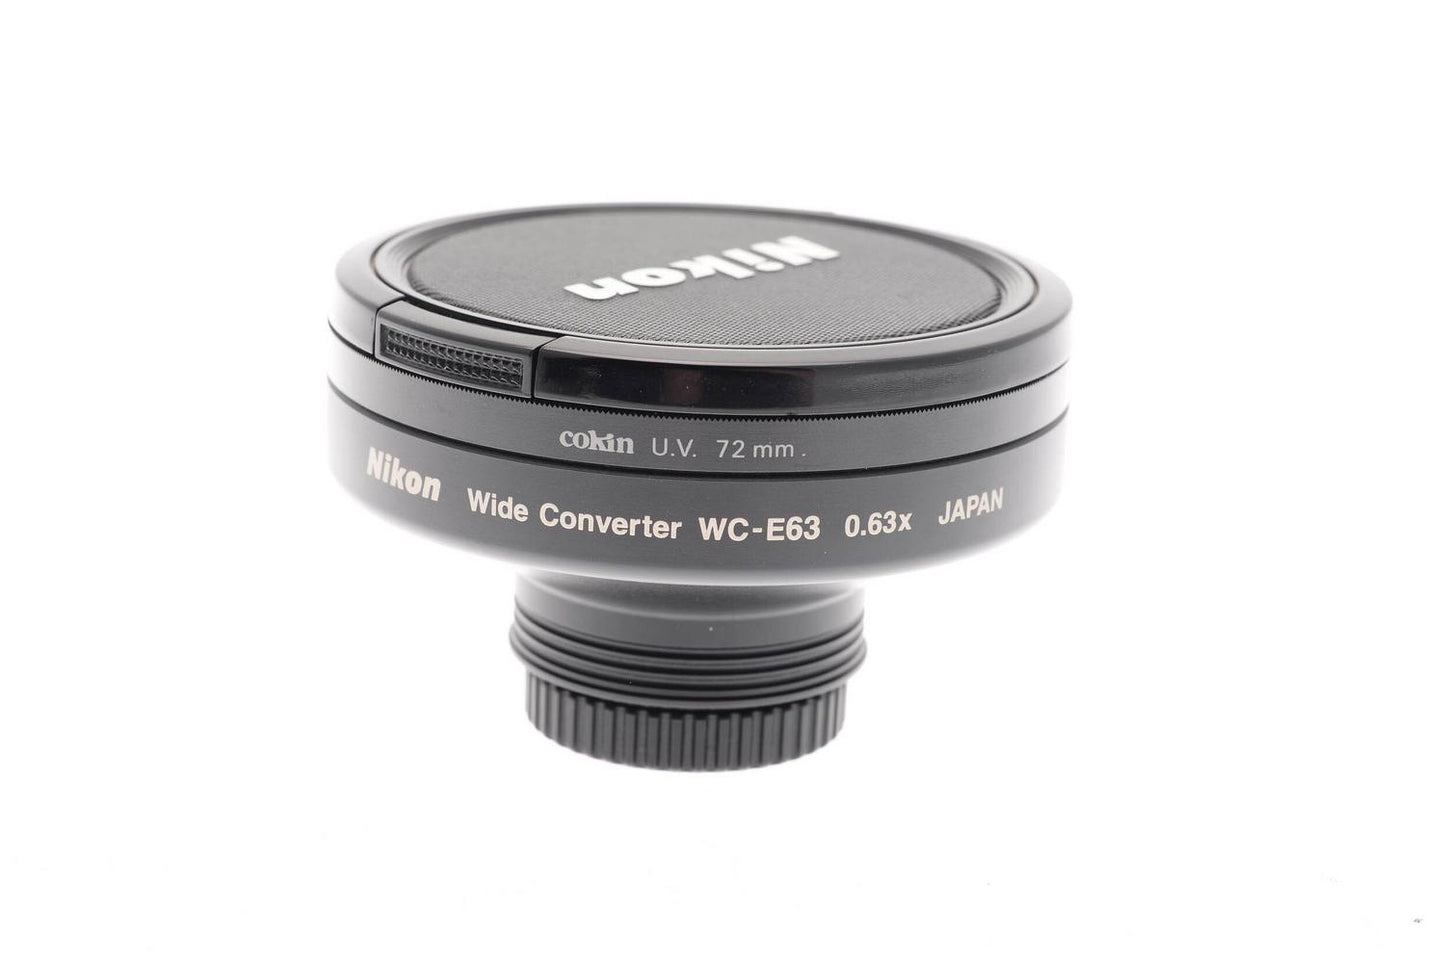 Nikon WC-E63 Wide Converter 0.63x - Accessory